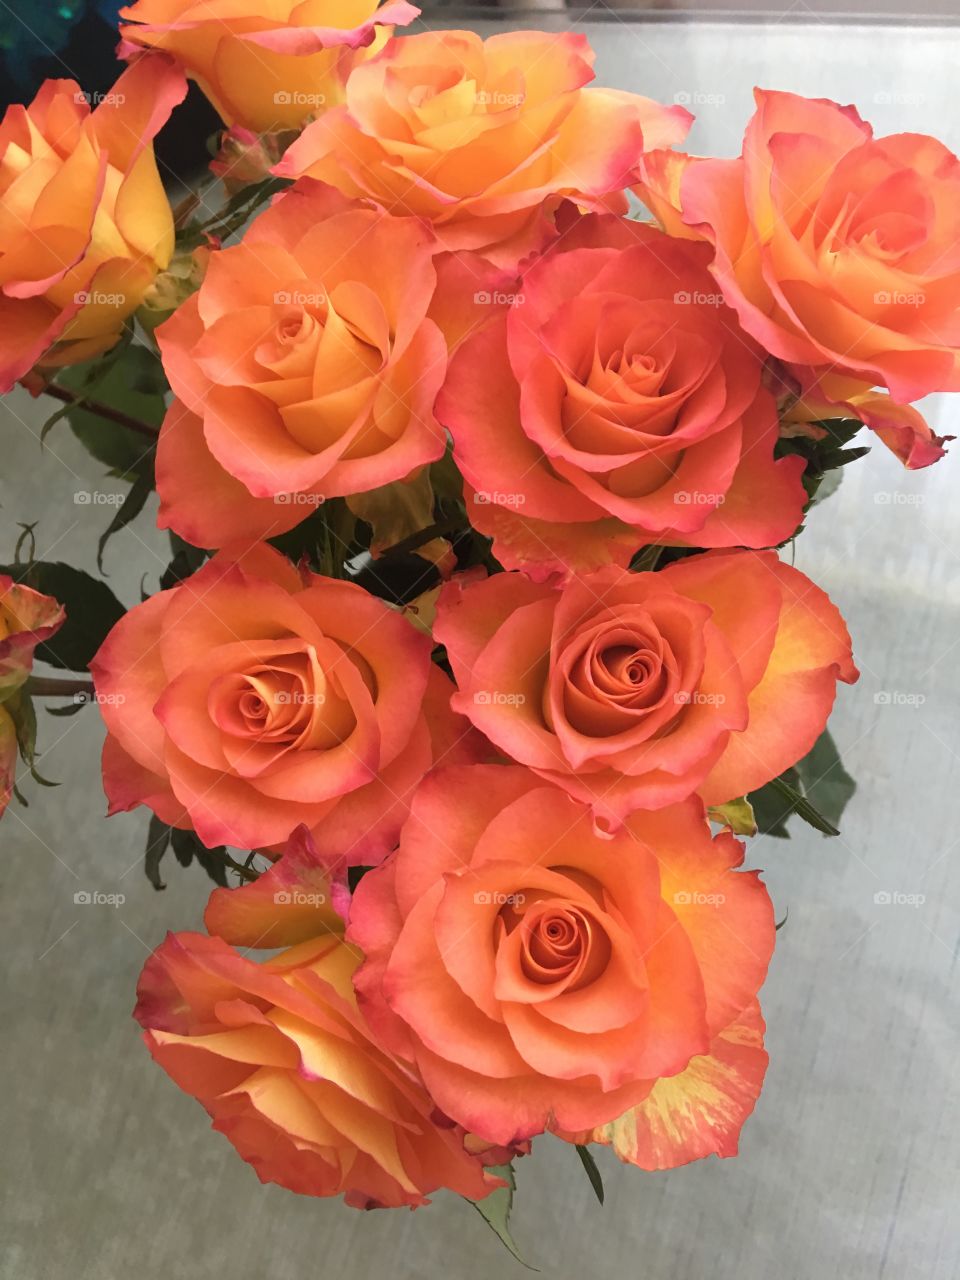 Shaded orange roses